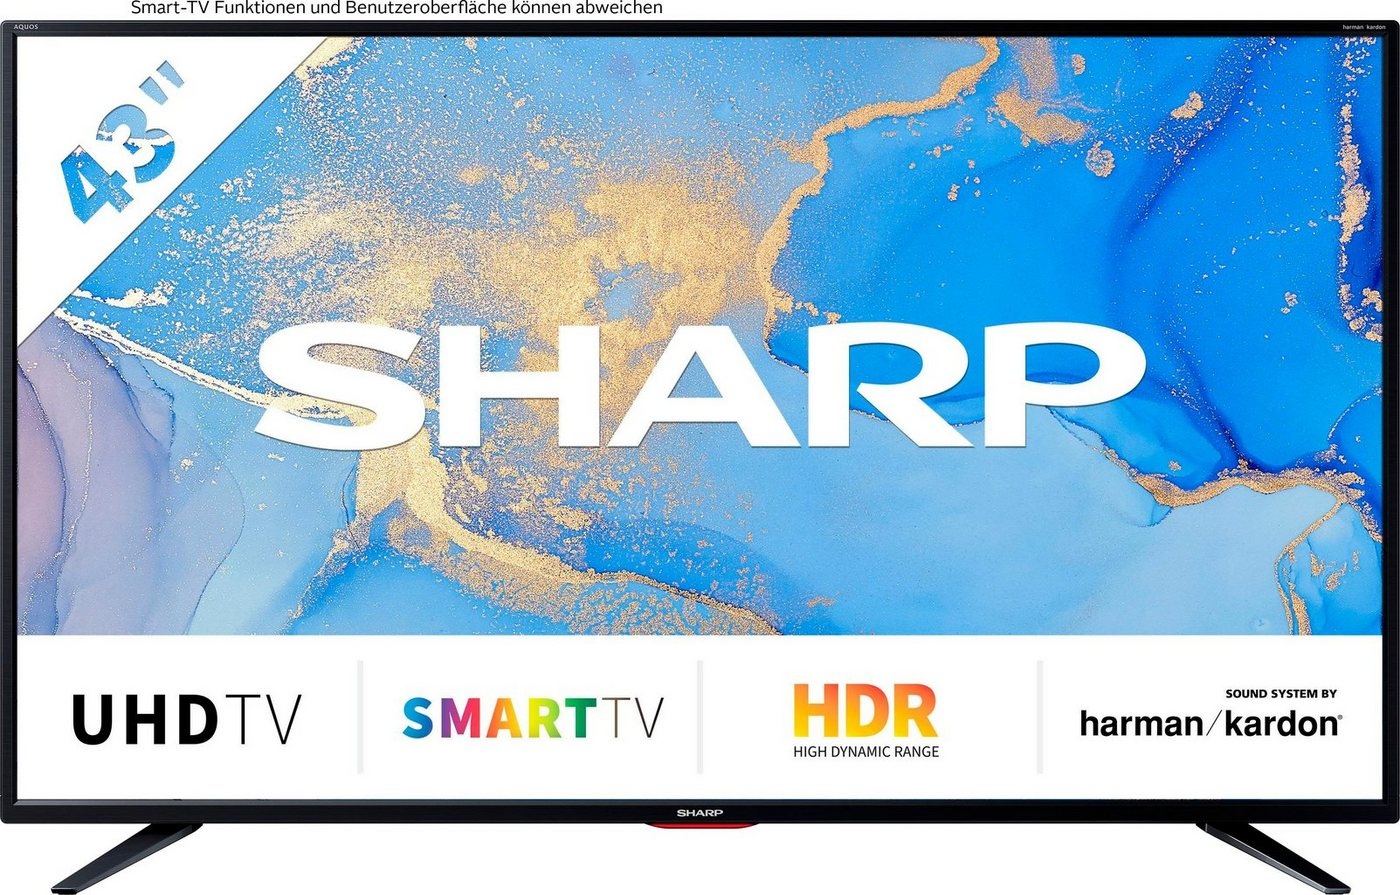 Sharp 4T-C43BJx LED-Fernseher (108 cm/43 Zoll, 4K Ultra HD, Smart-TV, 43BJ5E) schwarz